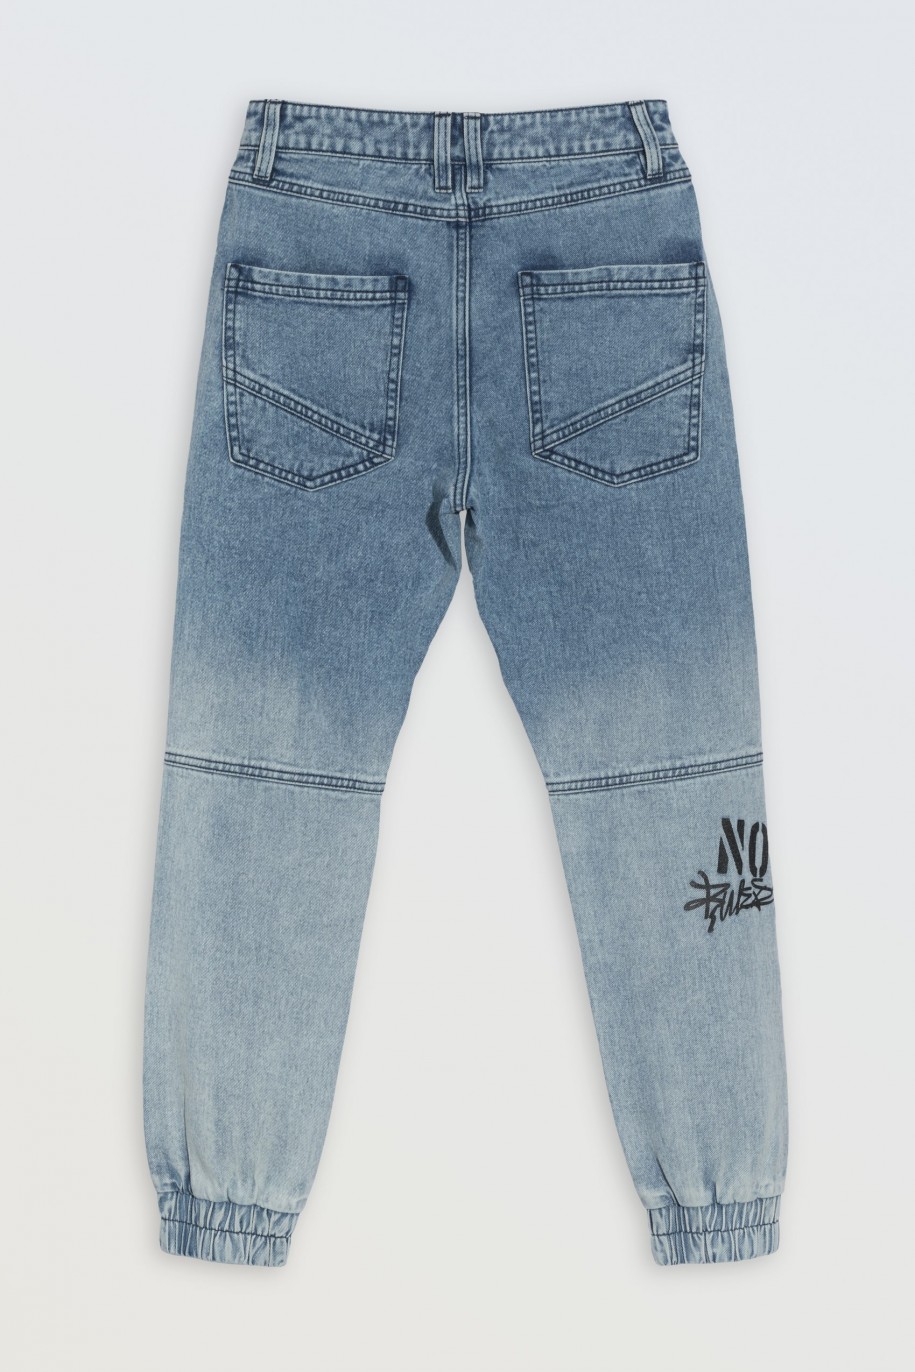 Niebieskie spodnie jeansowe typu joggery z nadrukami na nogawkach - 46554